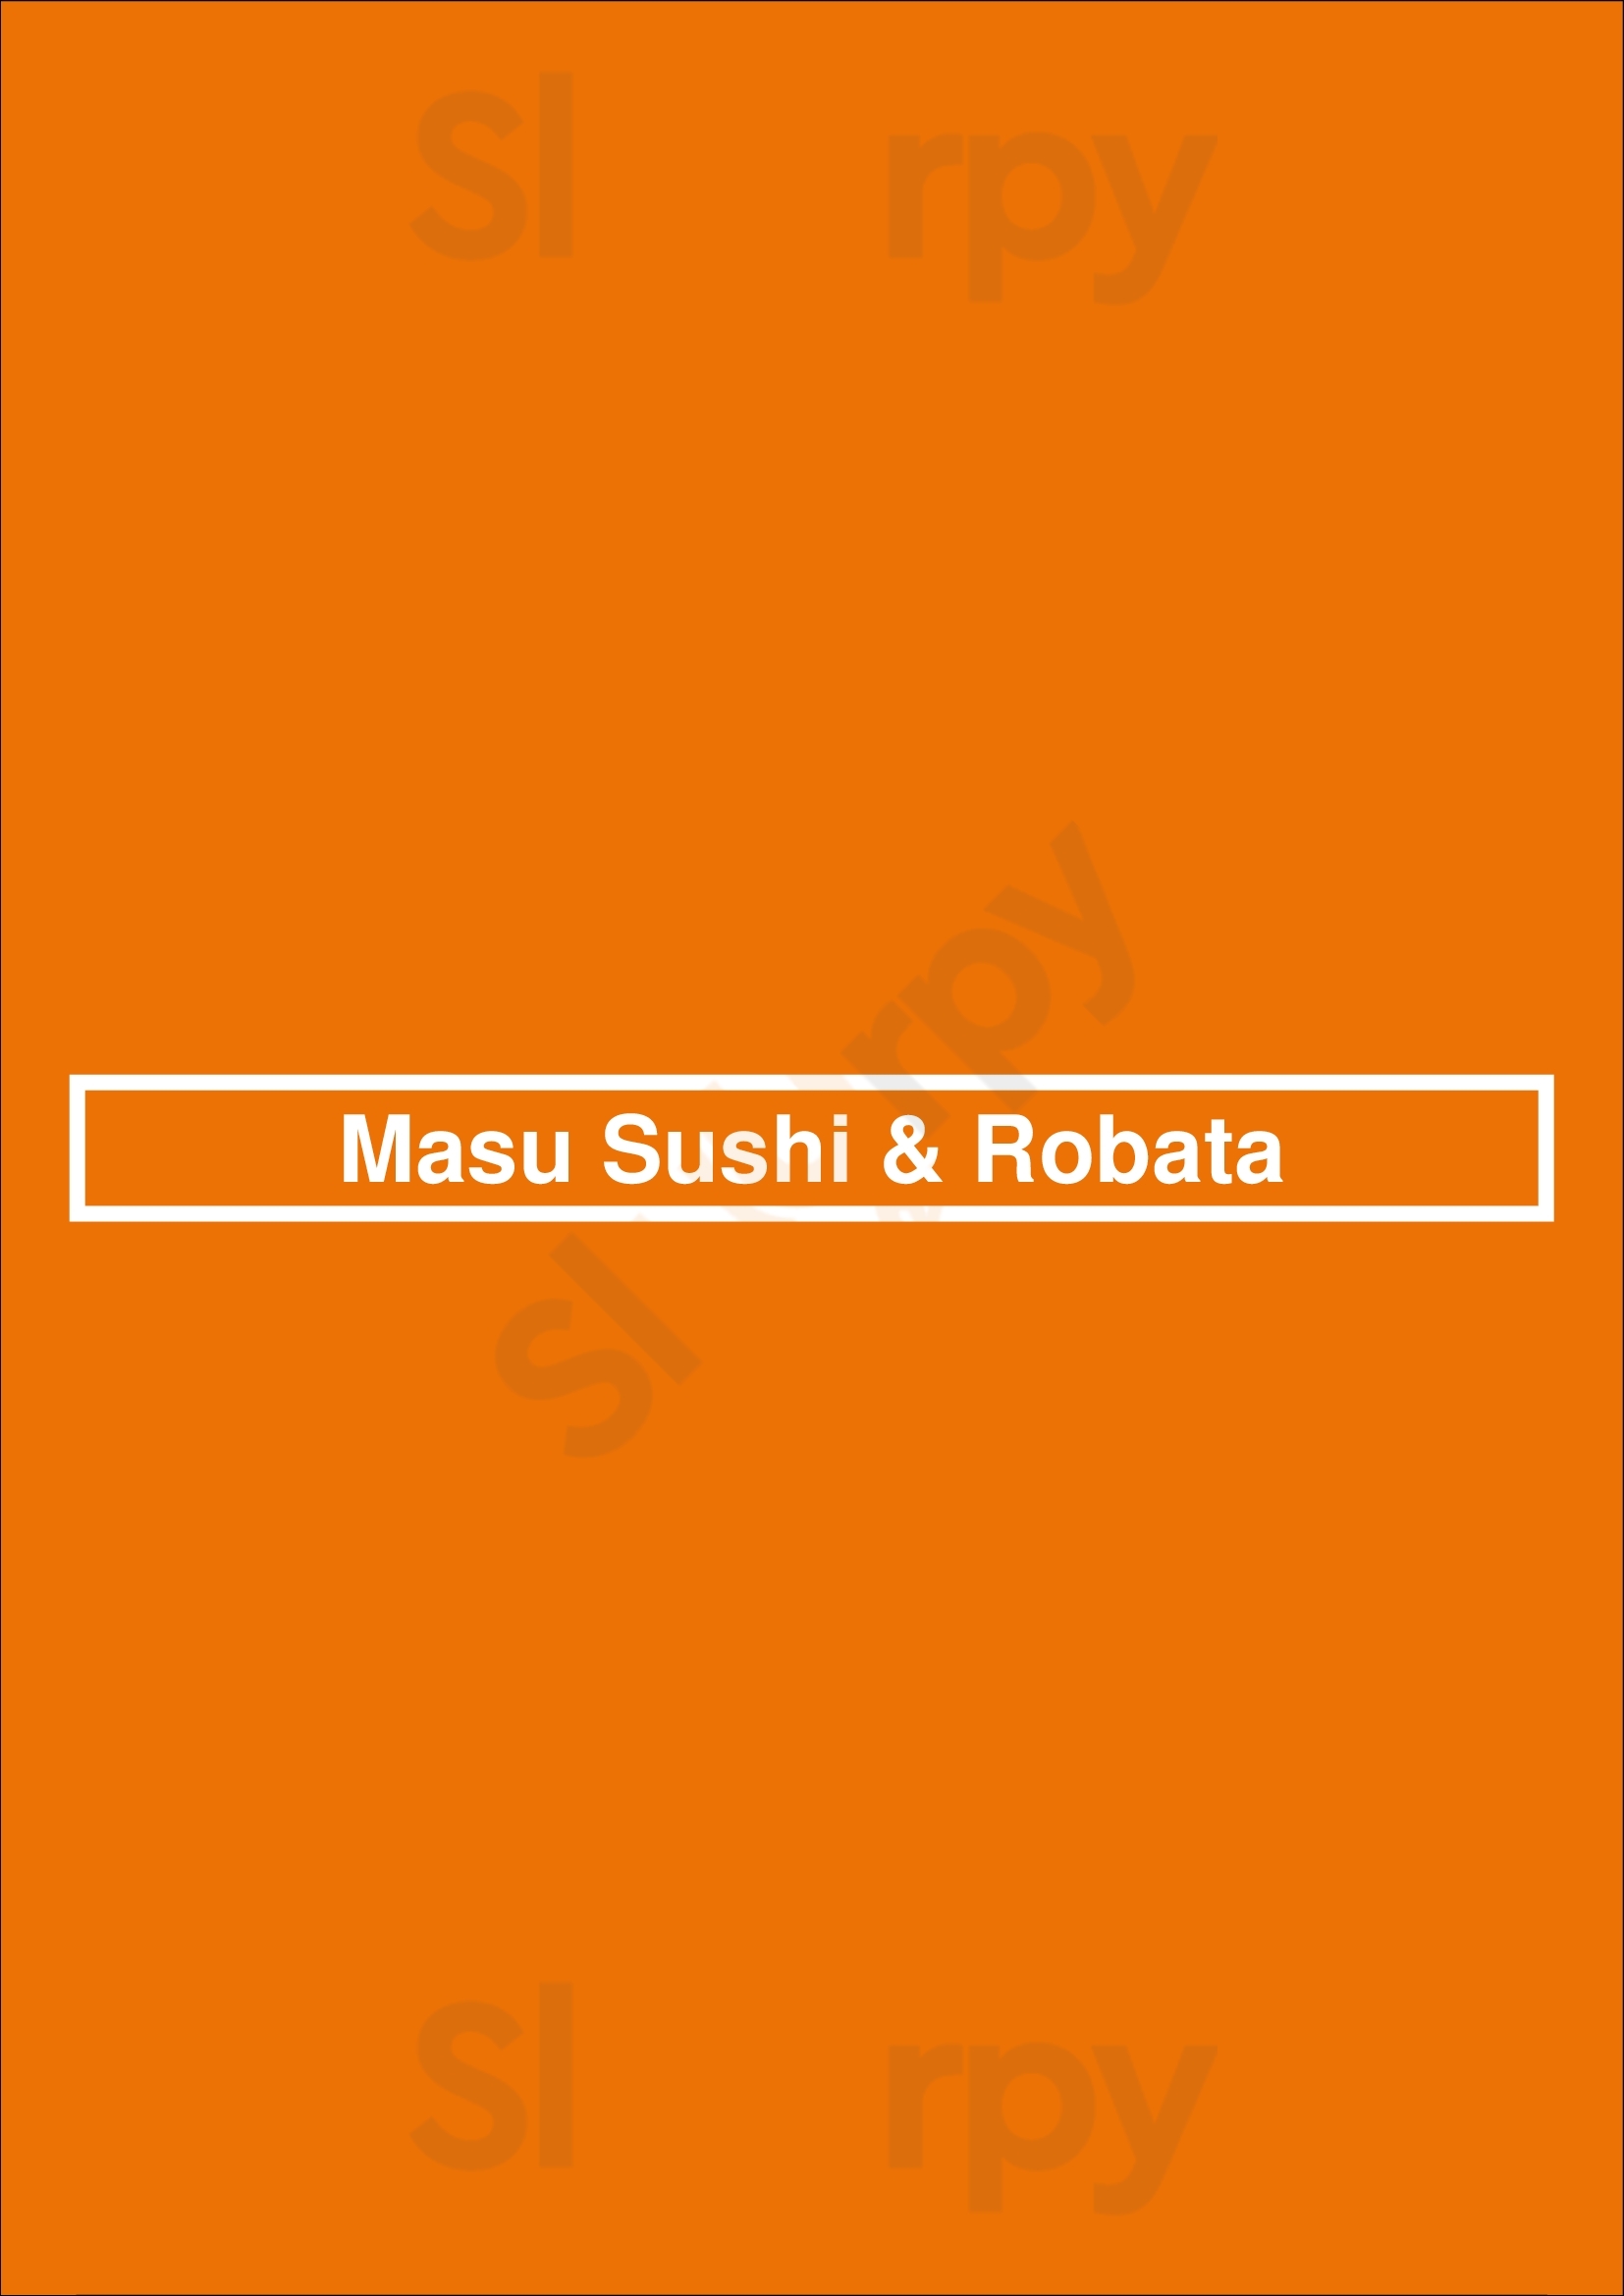 Masu Sushi & Robata Minneapolis Menu - 1